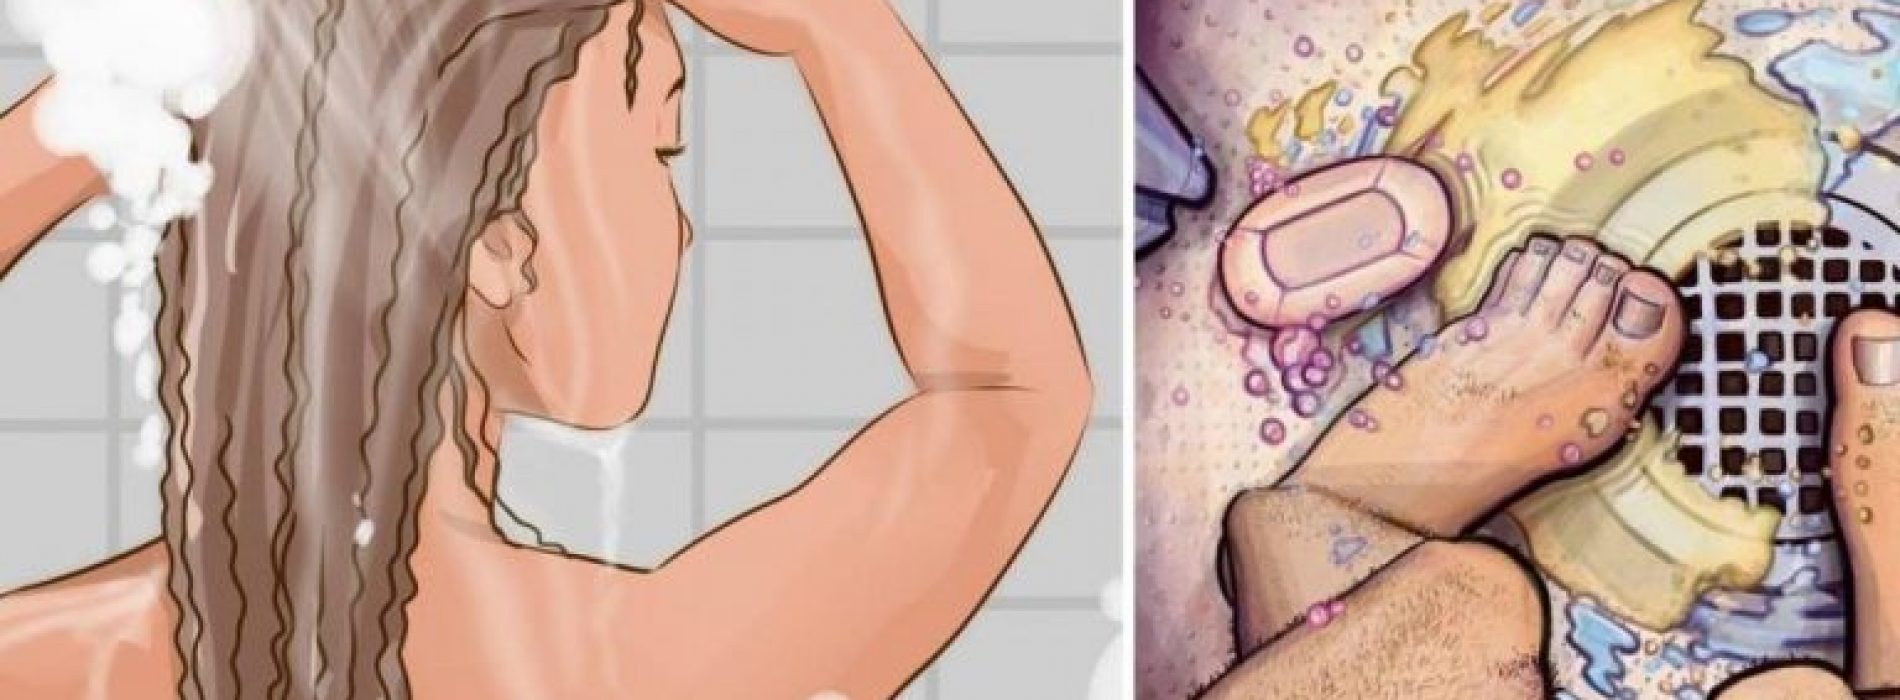 Wat artsen je nooit vertellen: 4 redenen waarom je altijd in de douche moet plassen!